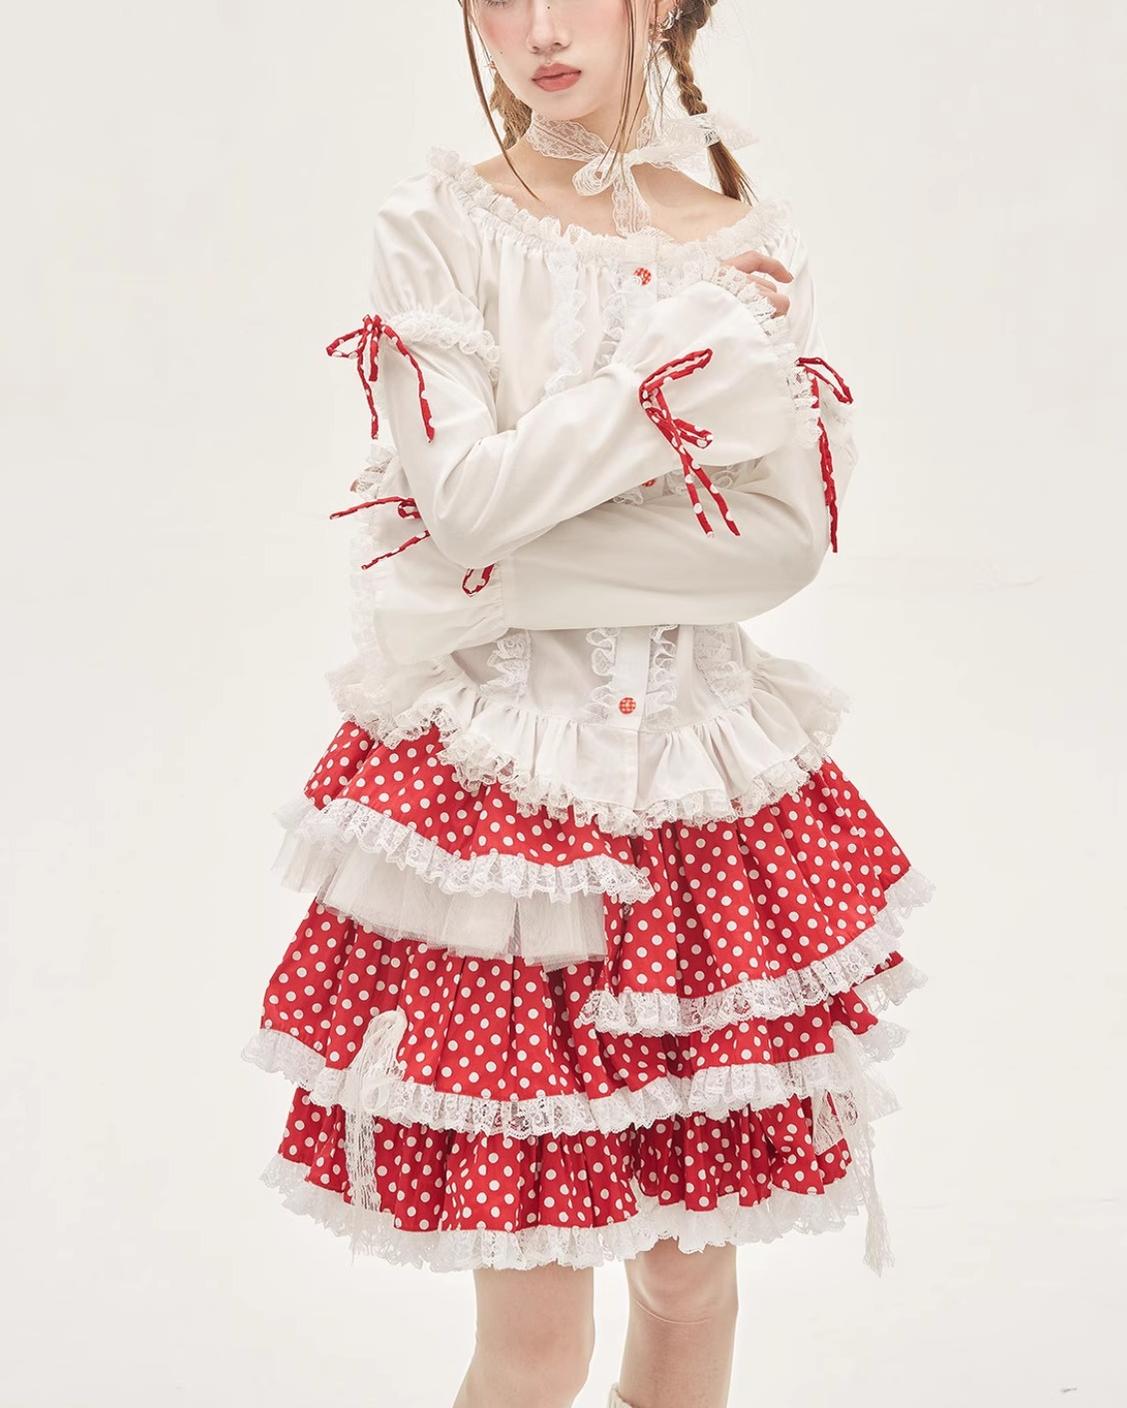 Lolita Skirt Retro Red Polka Dot Skirt 36150:542914